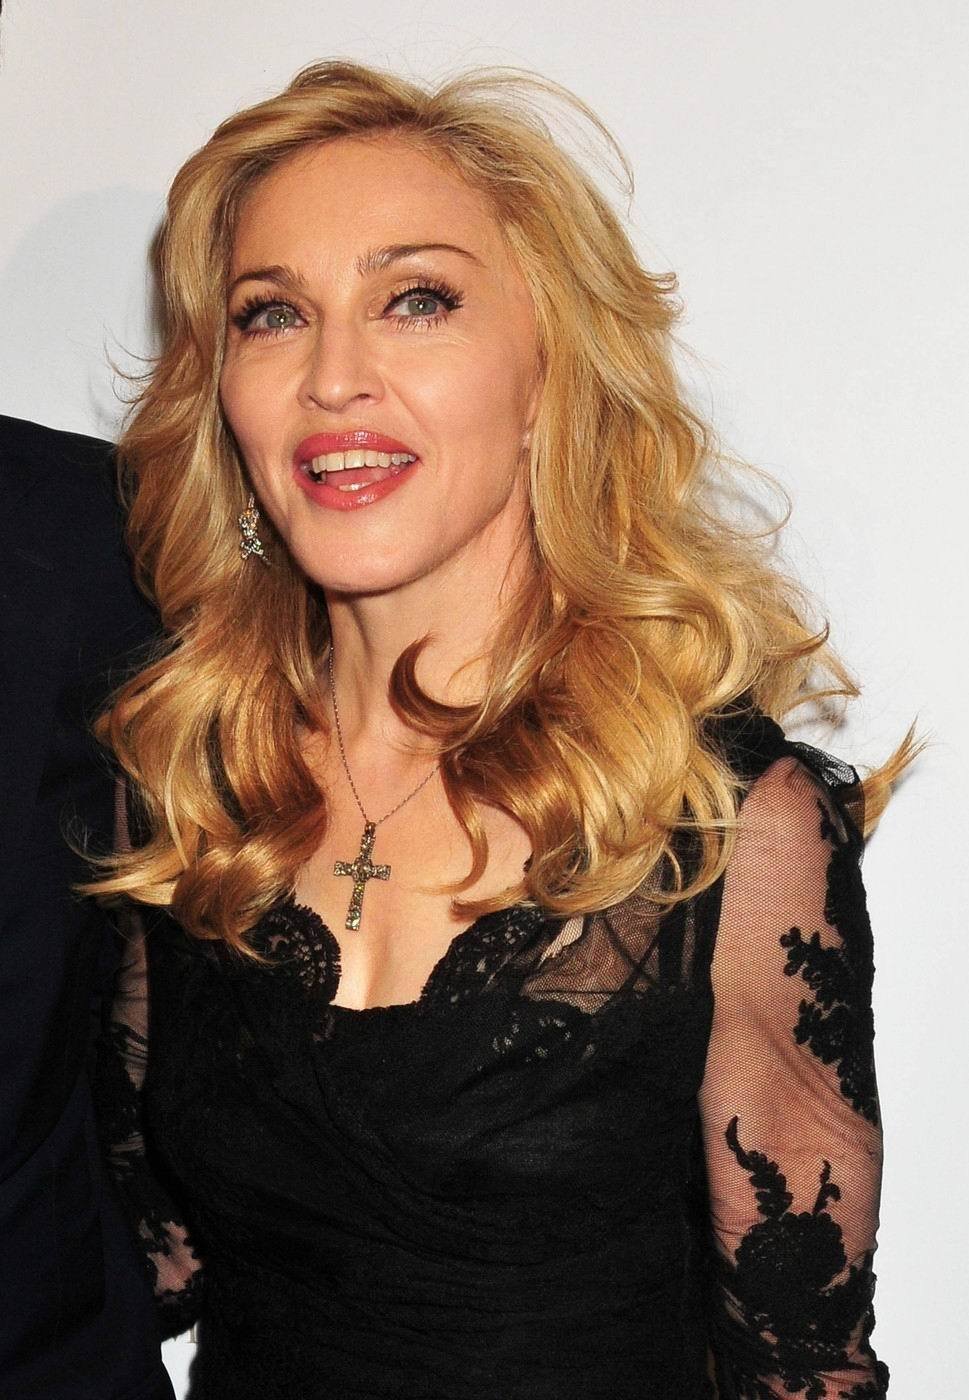 Madonna se nerada ukazuje fotografům - bojí se snad, že by fotky prozradily její věk?